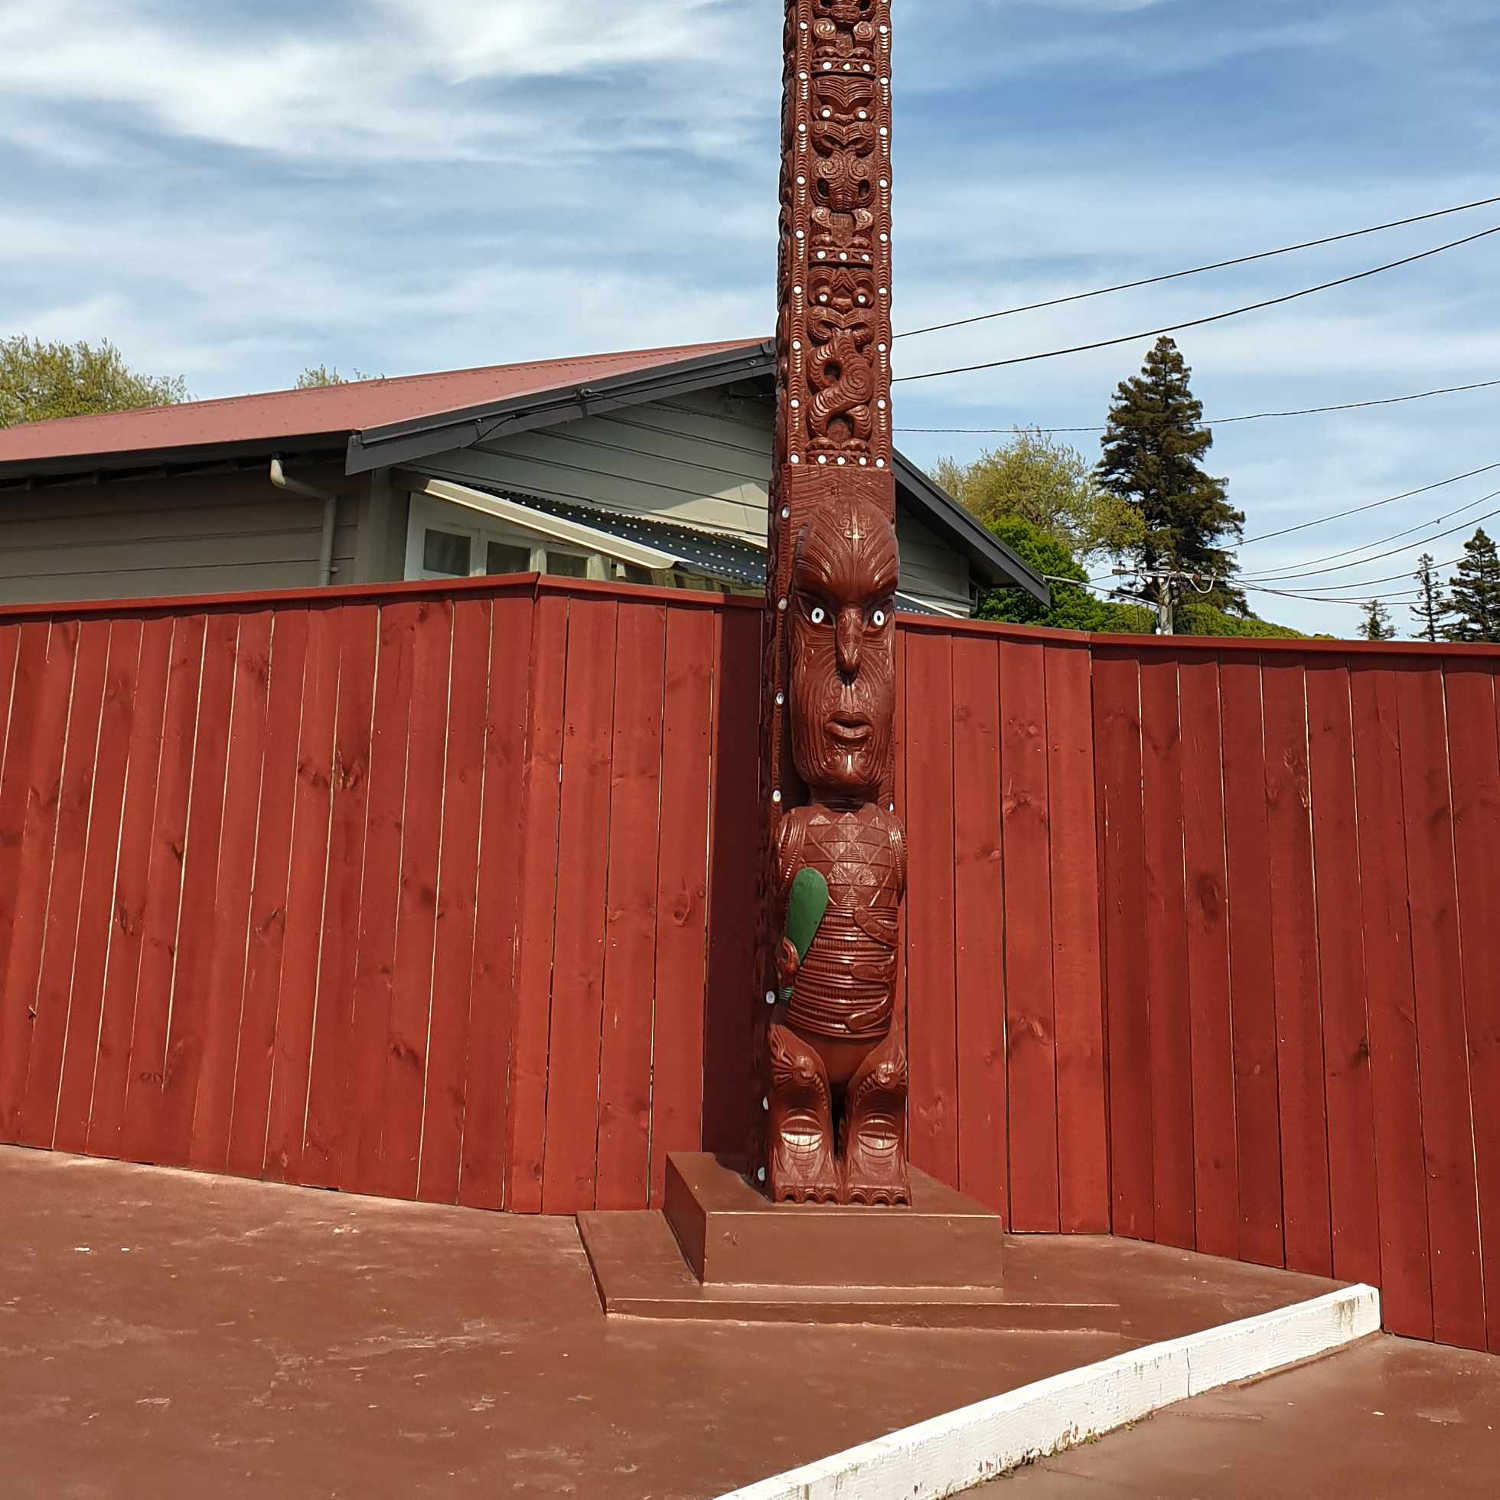 Pou Haki (Flag Pole) at Ohinemutu, New Zealand